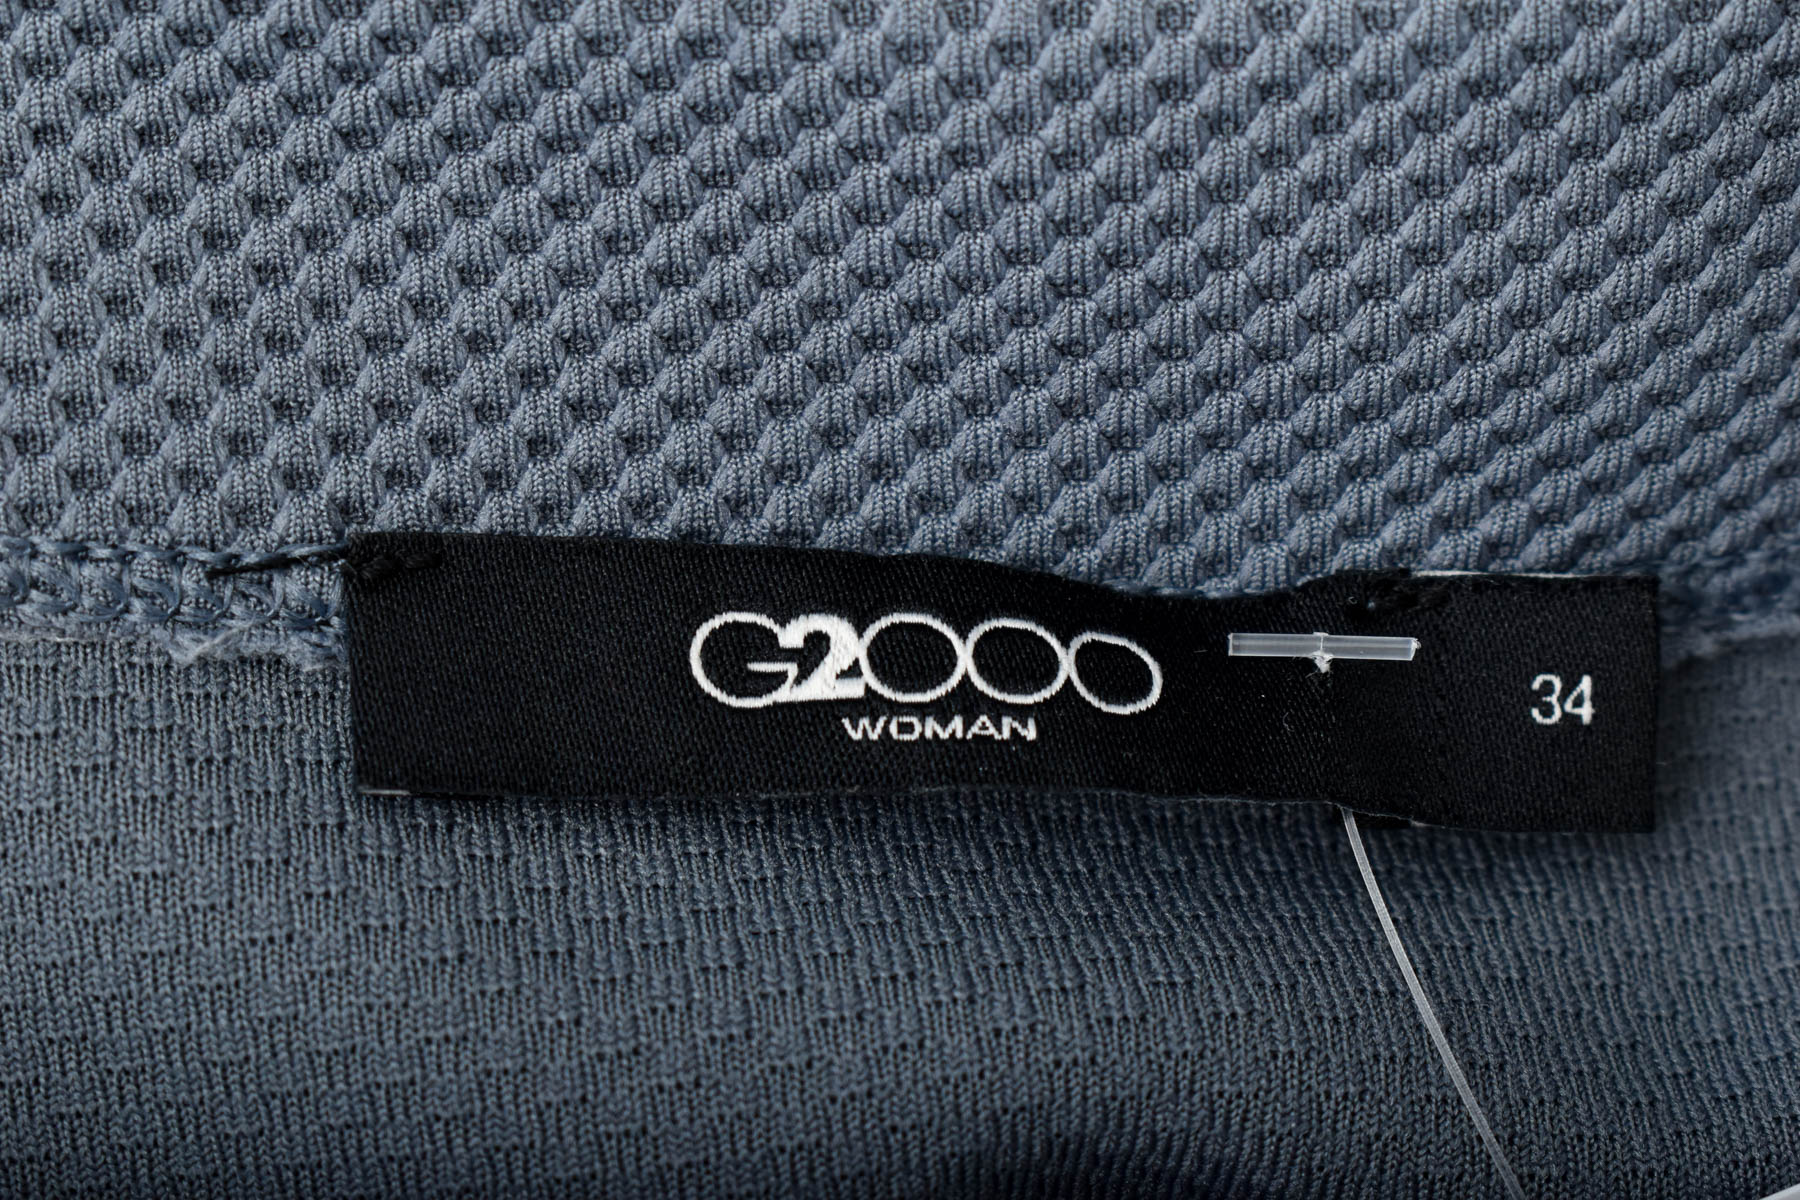 Women's t-shirt - G2OOO - 2